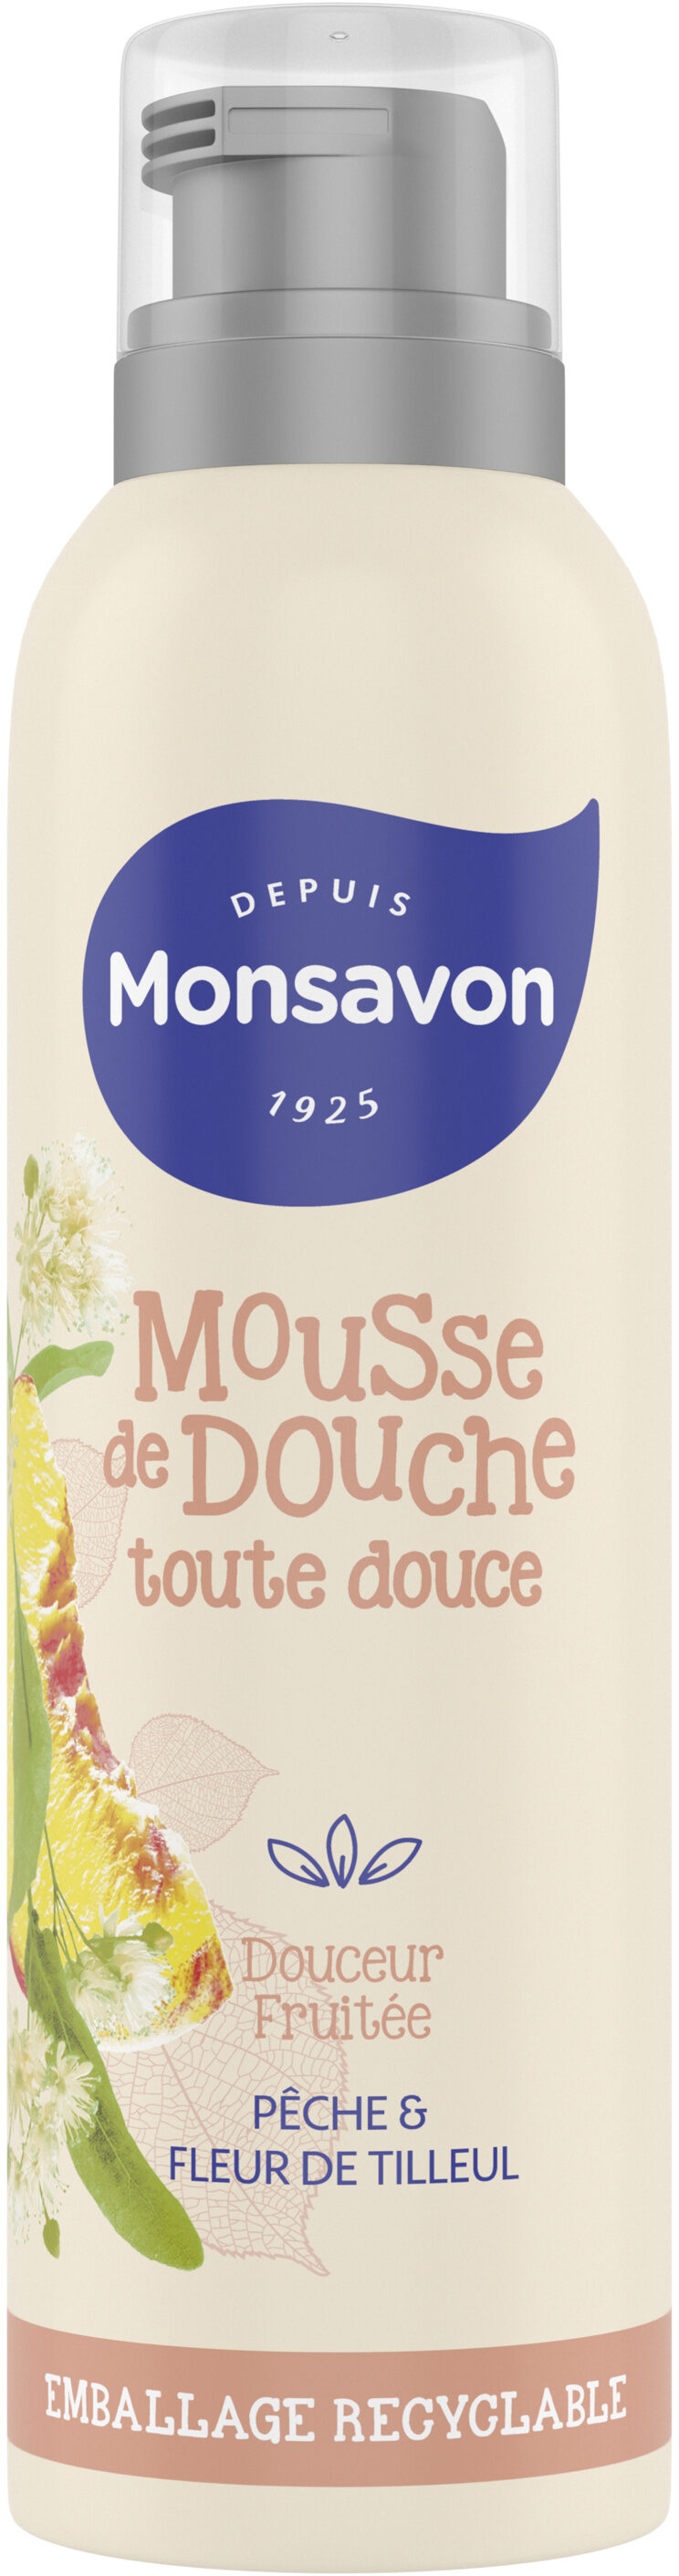 Monsavon Gel Douche Mousse Douceur Fruitée Pêche & Tilleul - Produktas - fr